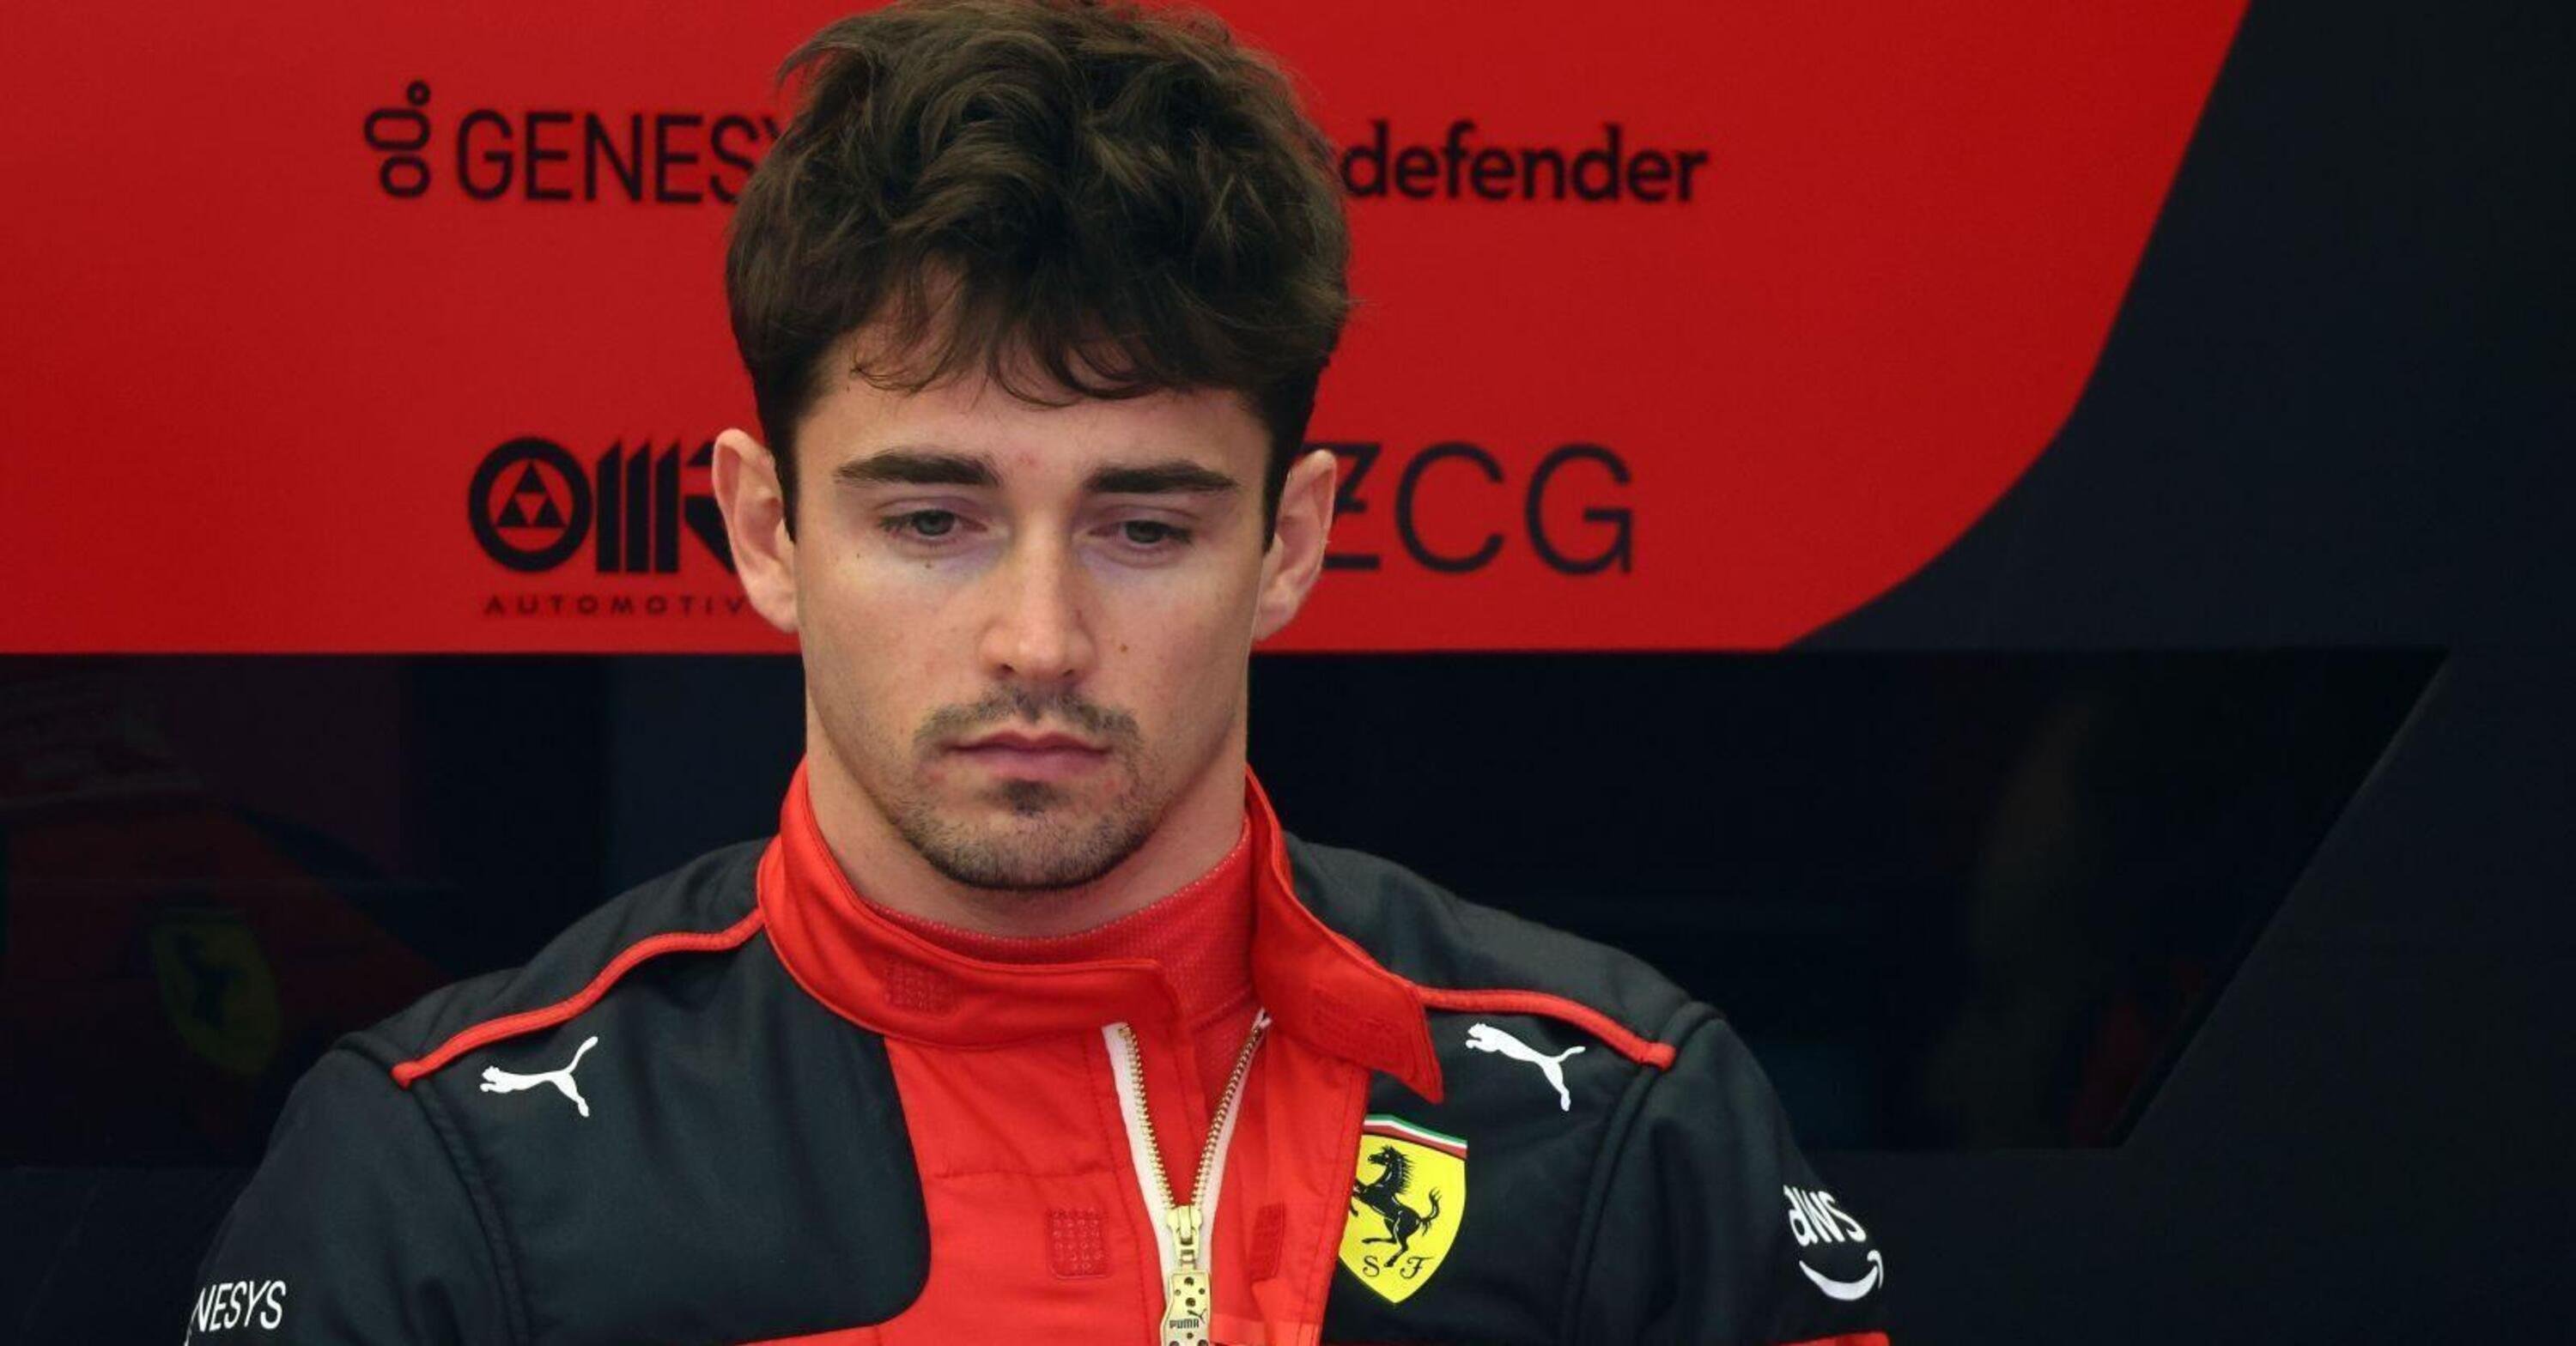 F1, Ferrari: Mekies addio, rinnovo Leclerc in standby: ecco le ultime voci da Maranello